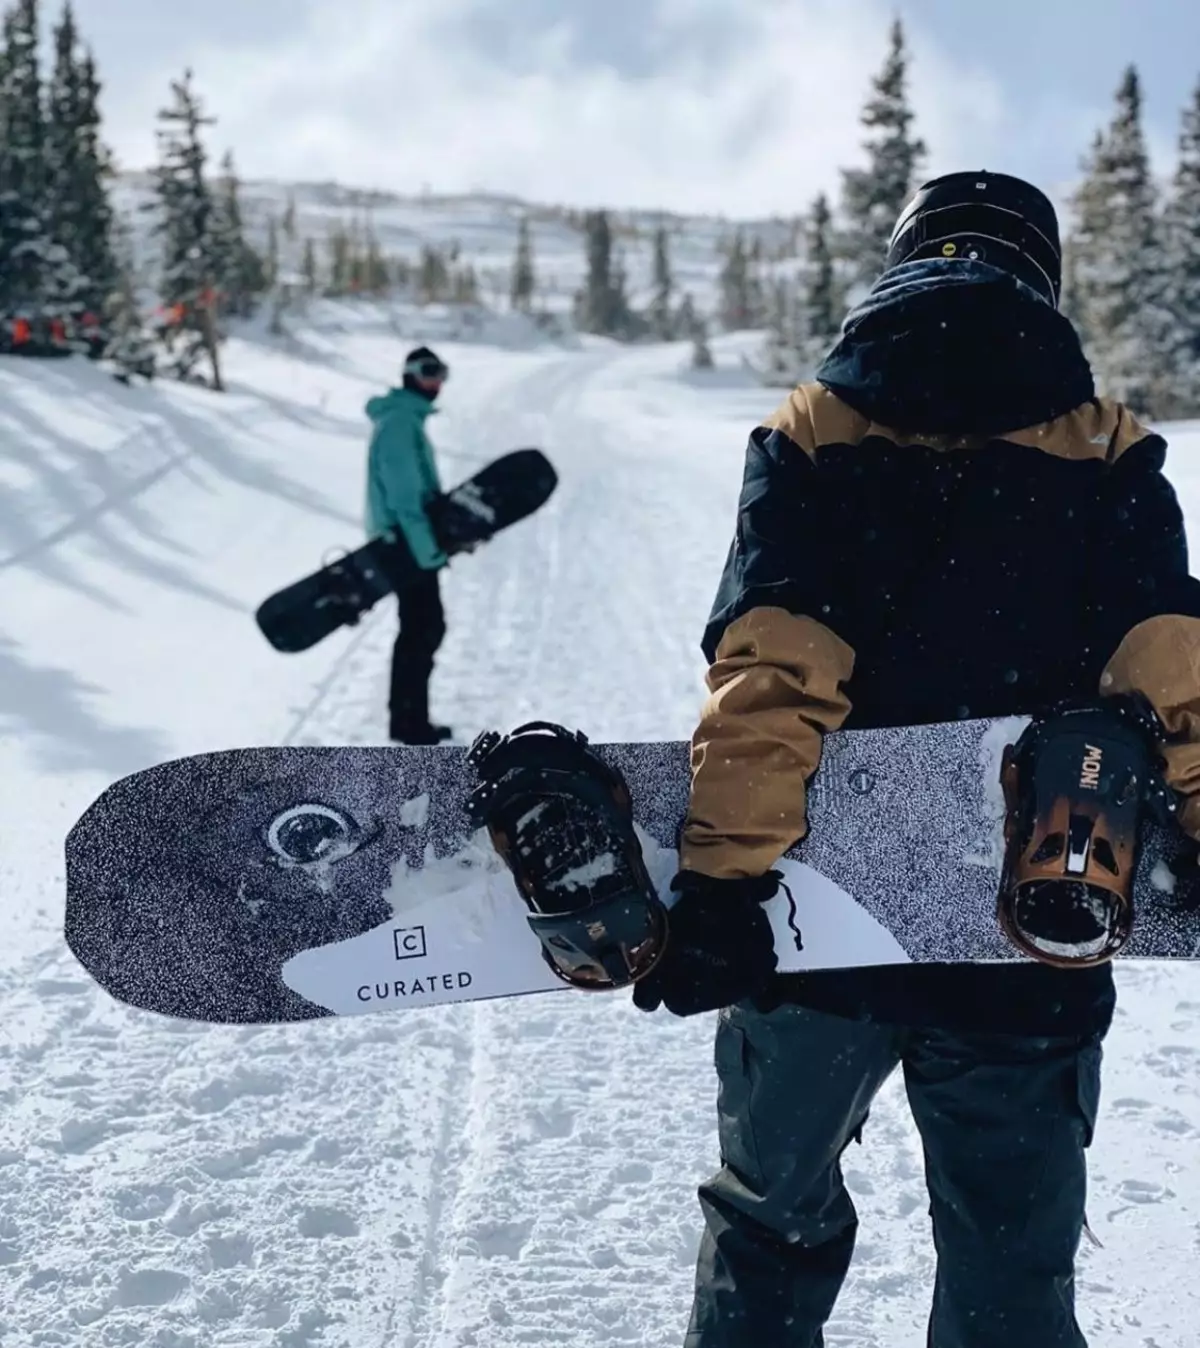 តើធ្វើដូចម្តេចដើម្បីជ្រើសរើស snowboard សម្រាប់កំណើនមួយ? Rostovka របស់ស្ត្រី។ តើធ្វើដូចម្តេចដើម្បីជ្រើសរើសជាបុរសដែលមានទំហំ snowboard? ការជ្រើសរើសនៃរង្វាស់សម្រាប់កុមារ 8381_5